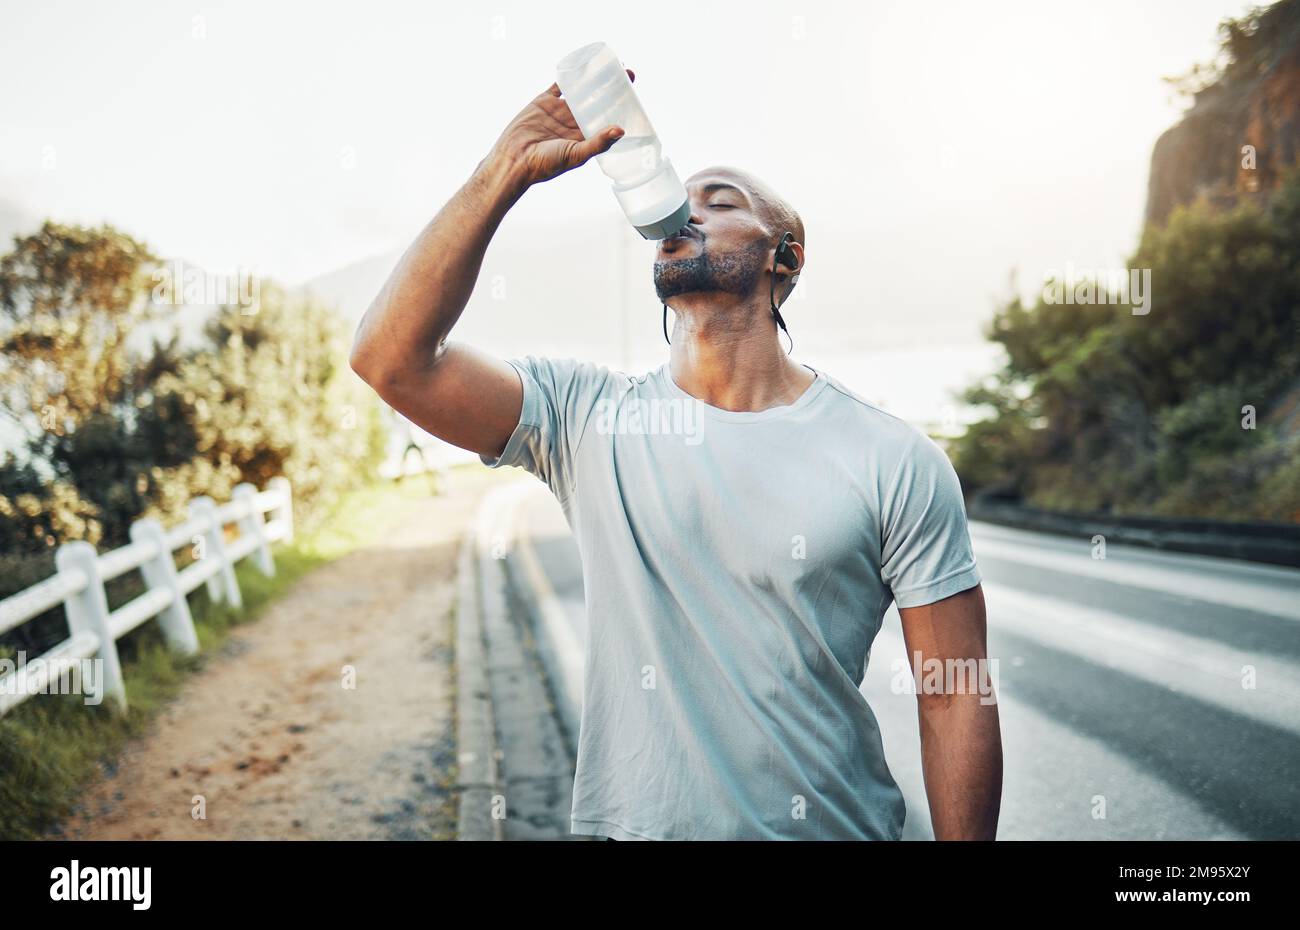 Guardare nello specchio. Thats la vostra concorrenza. un giovane uomo sportivo che beve acqua mentre si esercita all'aperto. Foto Stock